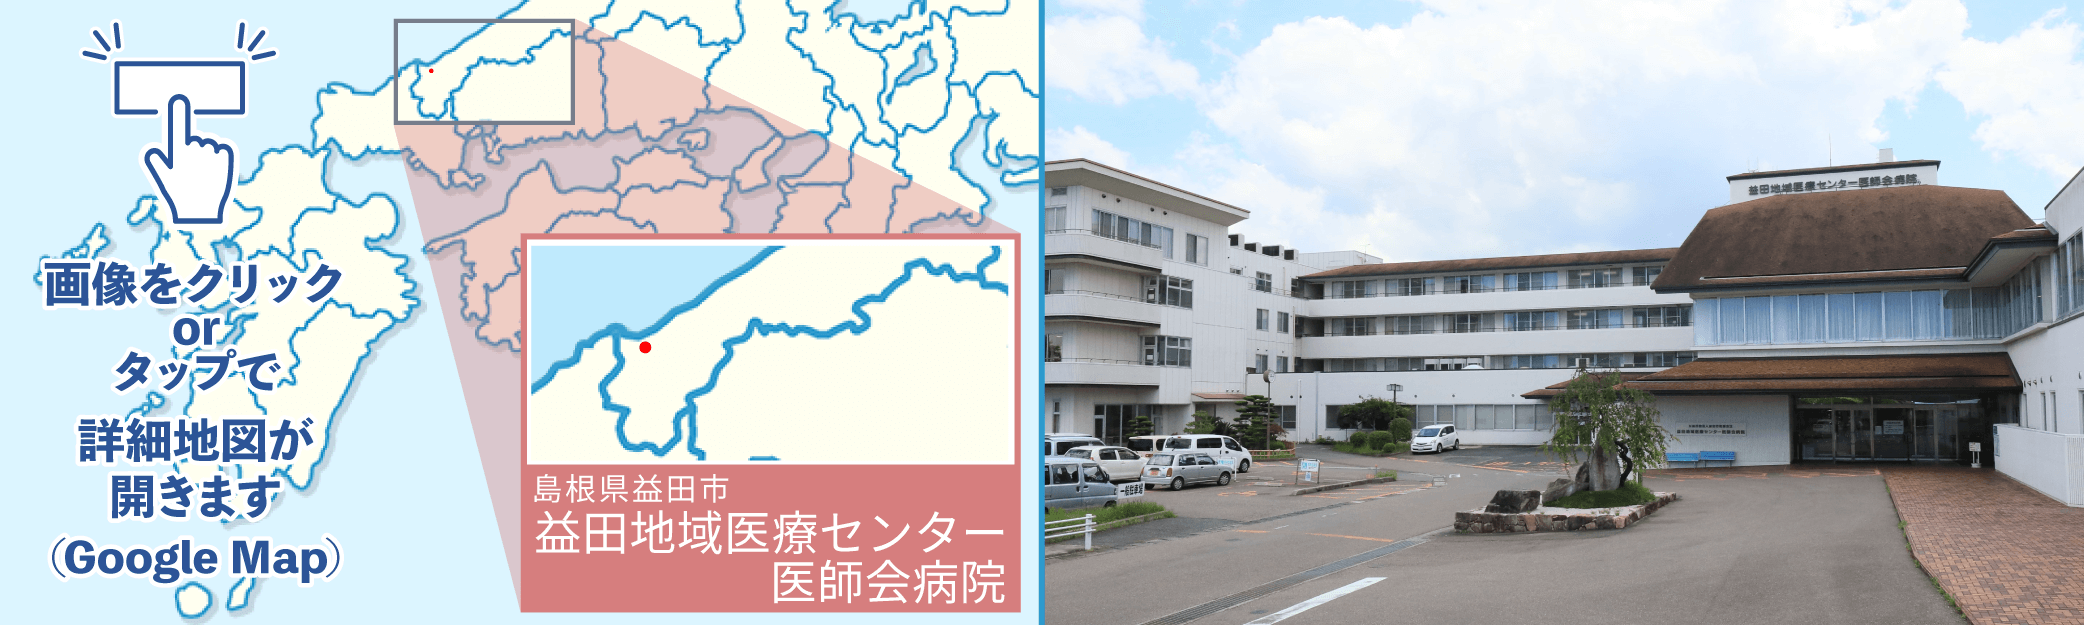 益田地域医療センター医師会病院地図・外観写真※クリックでGoogleMapが開きます